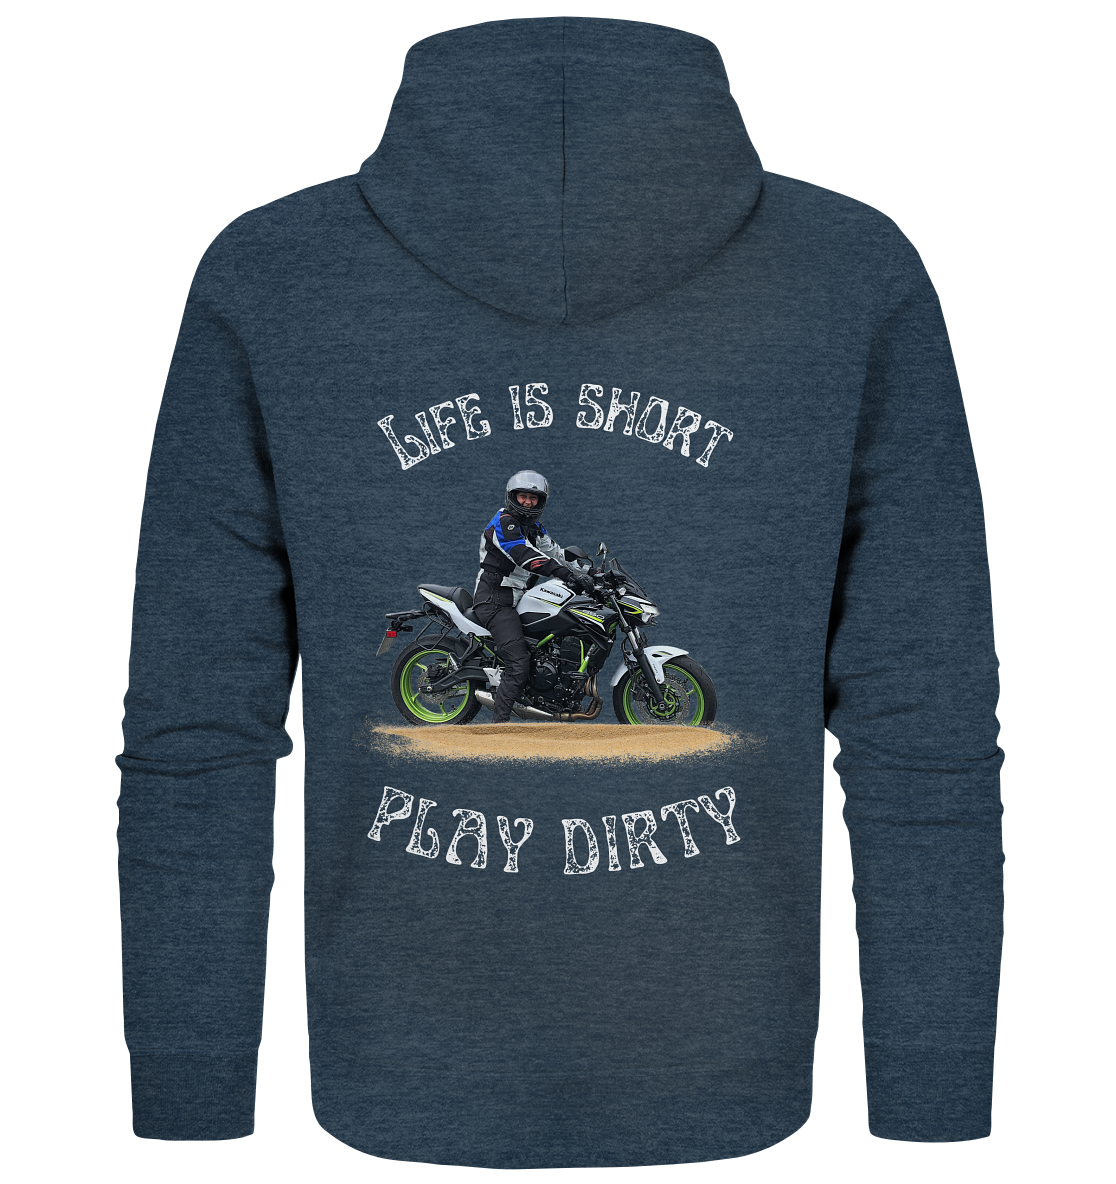 "Life is short - play dirty" _ für Angelika | Hoodie-Jacke mit deinem Foto und Motorrad-Spruch in hellem Design